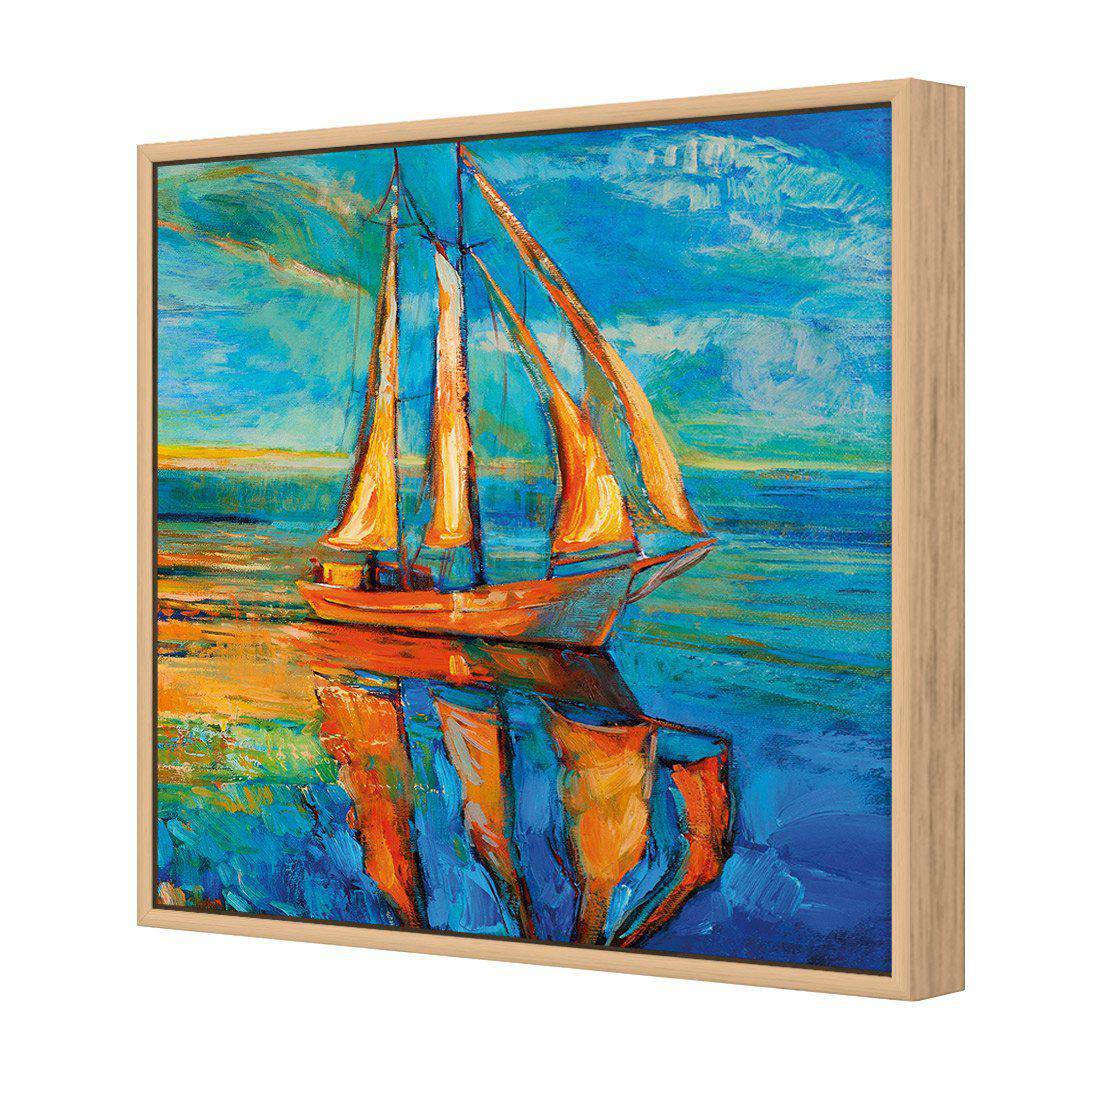 Sailing Boat Reflected Canvas Art-Canvas-Wall Art Designs-30x30cm-Canvas - Oak Frame-Wall Art Designs